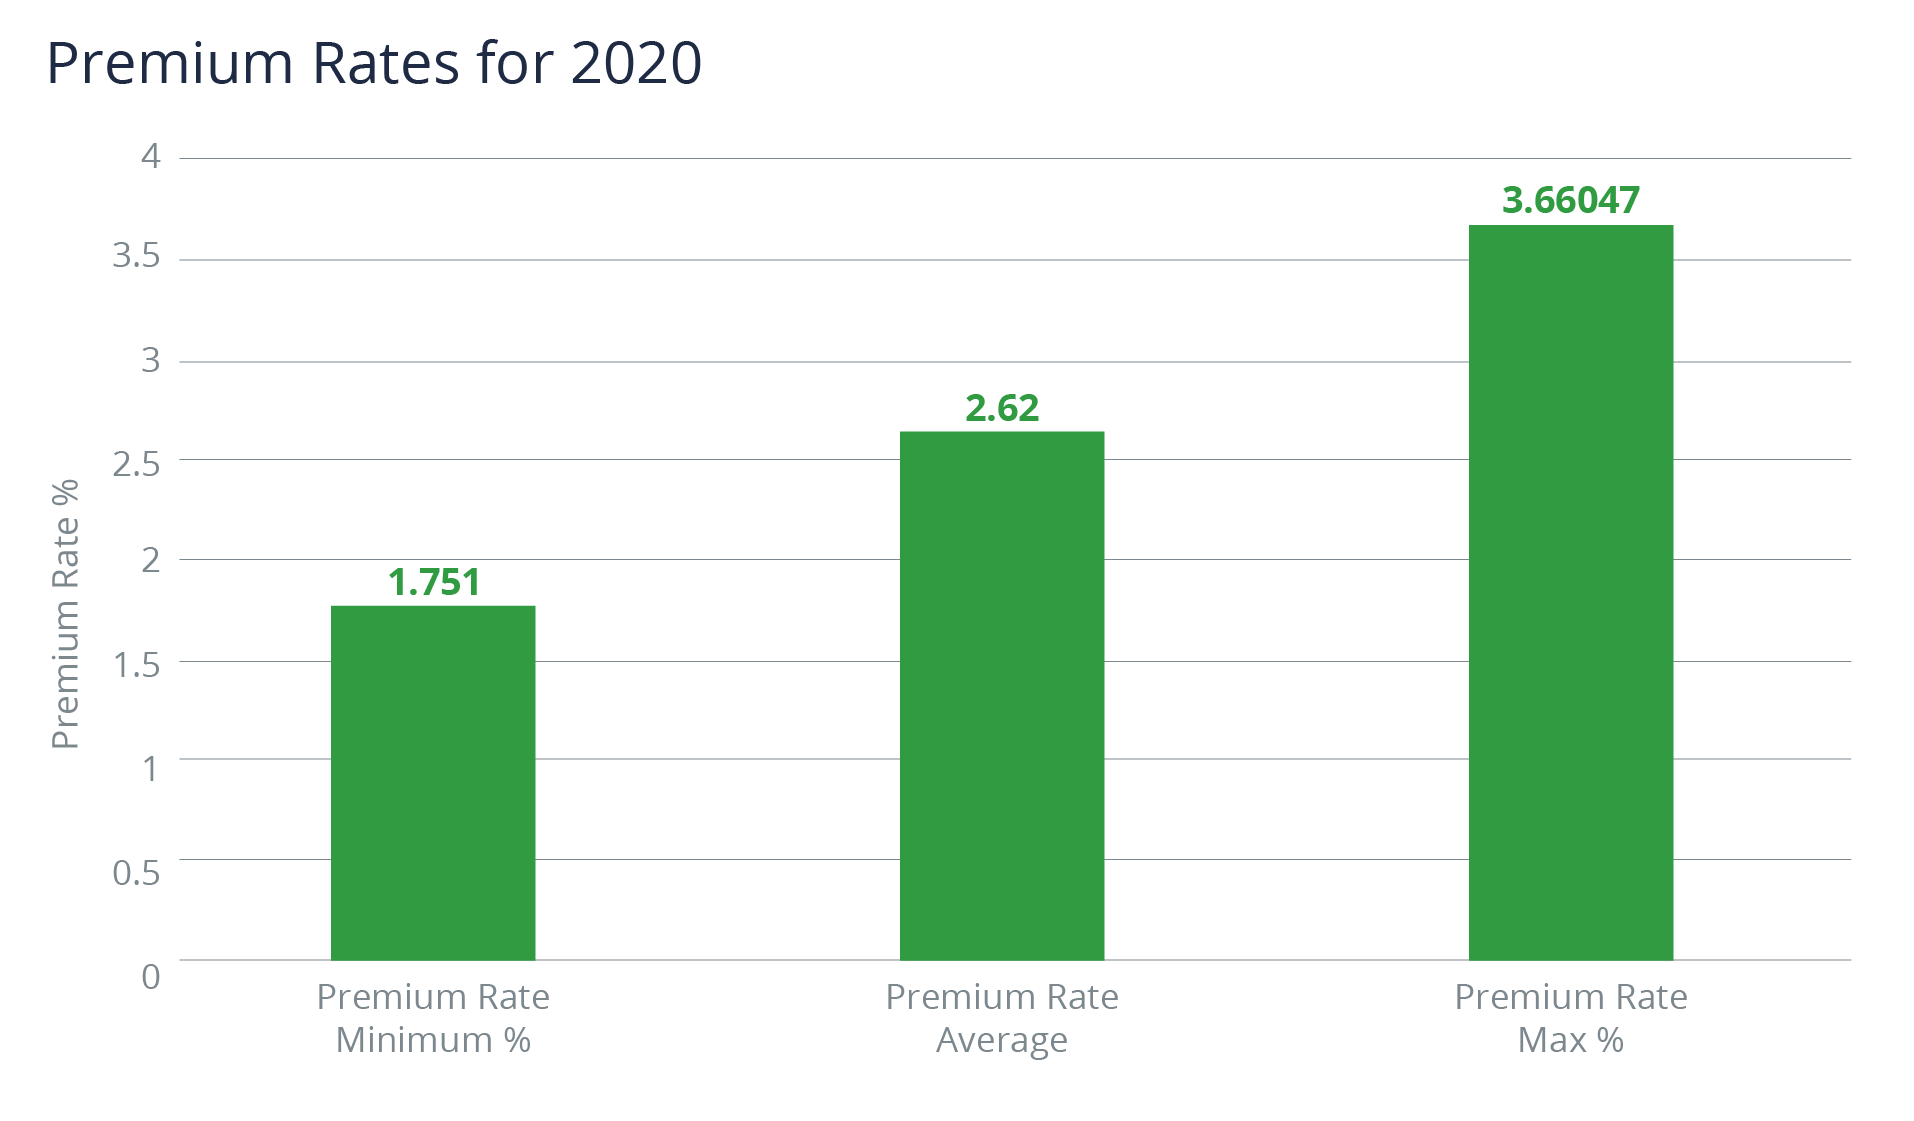 Premium Rates for 2020